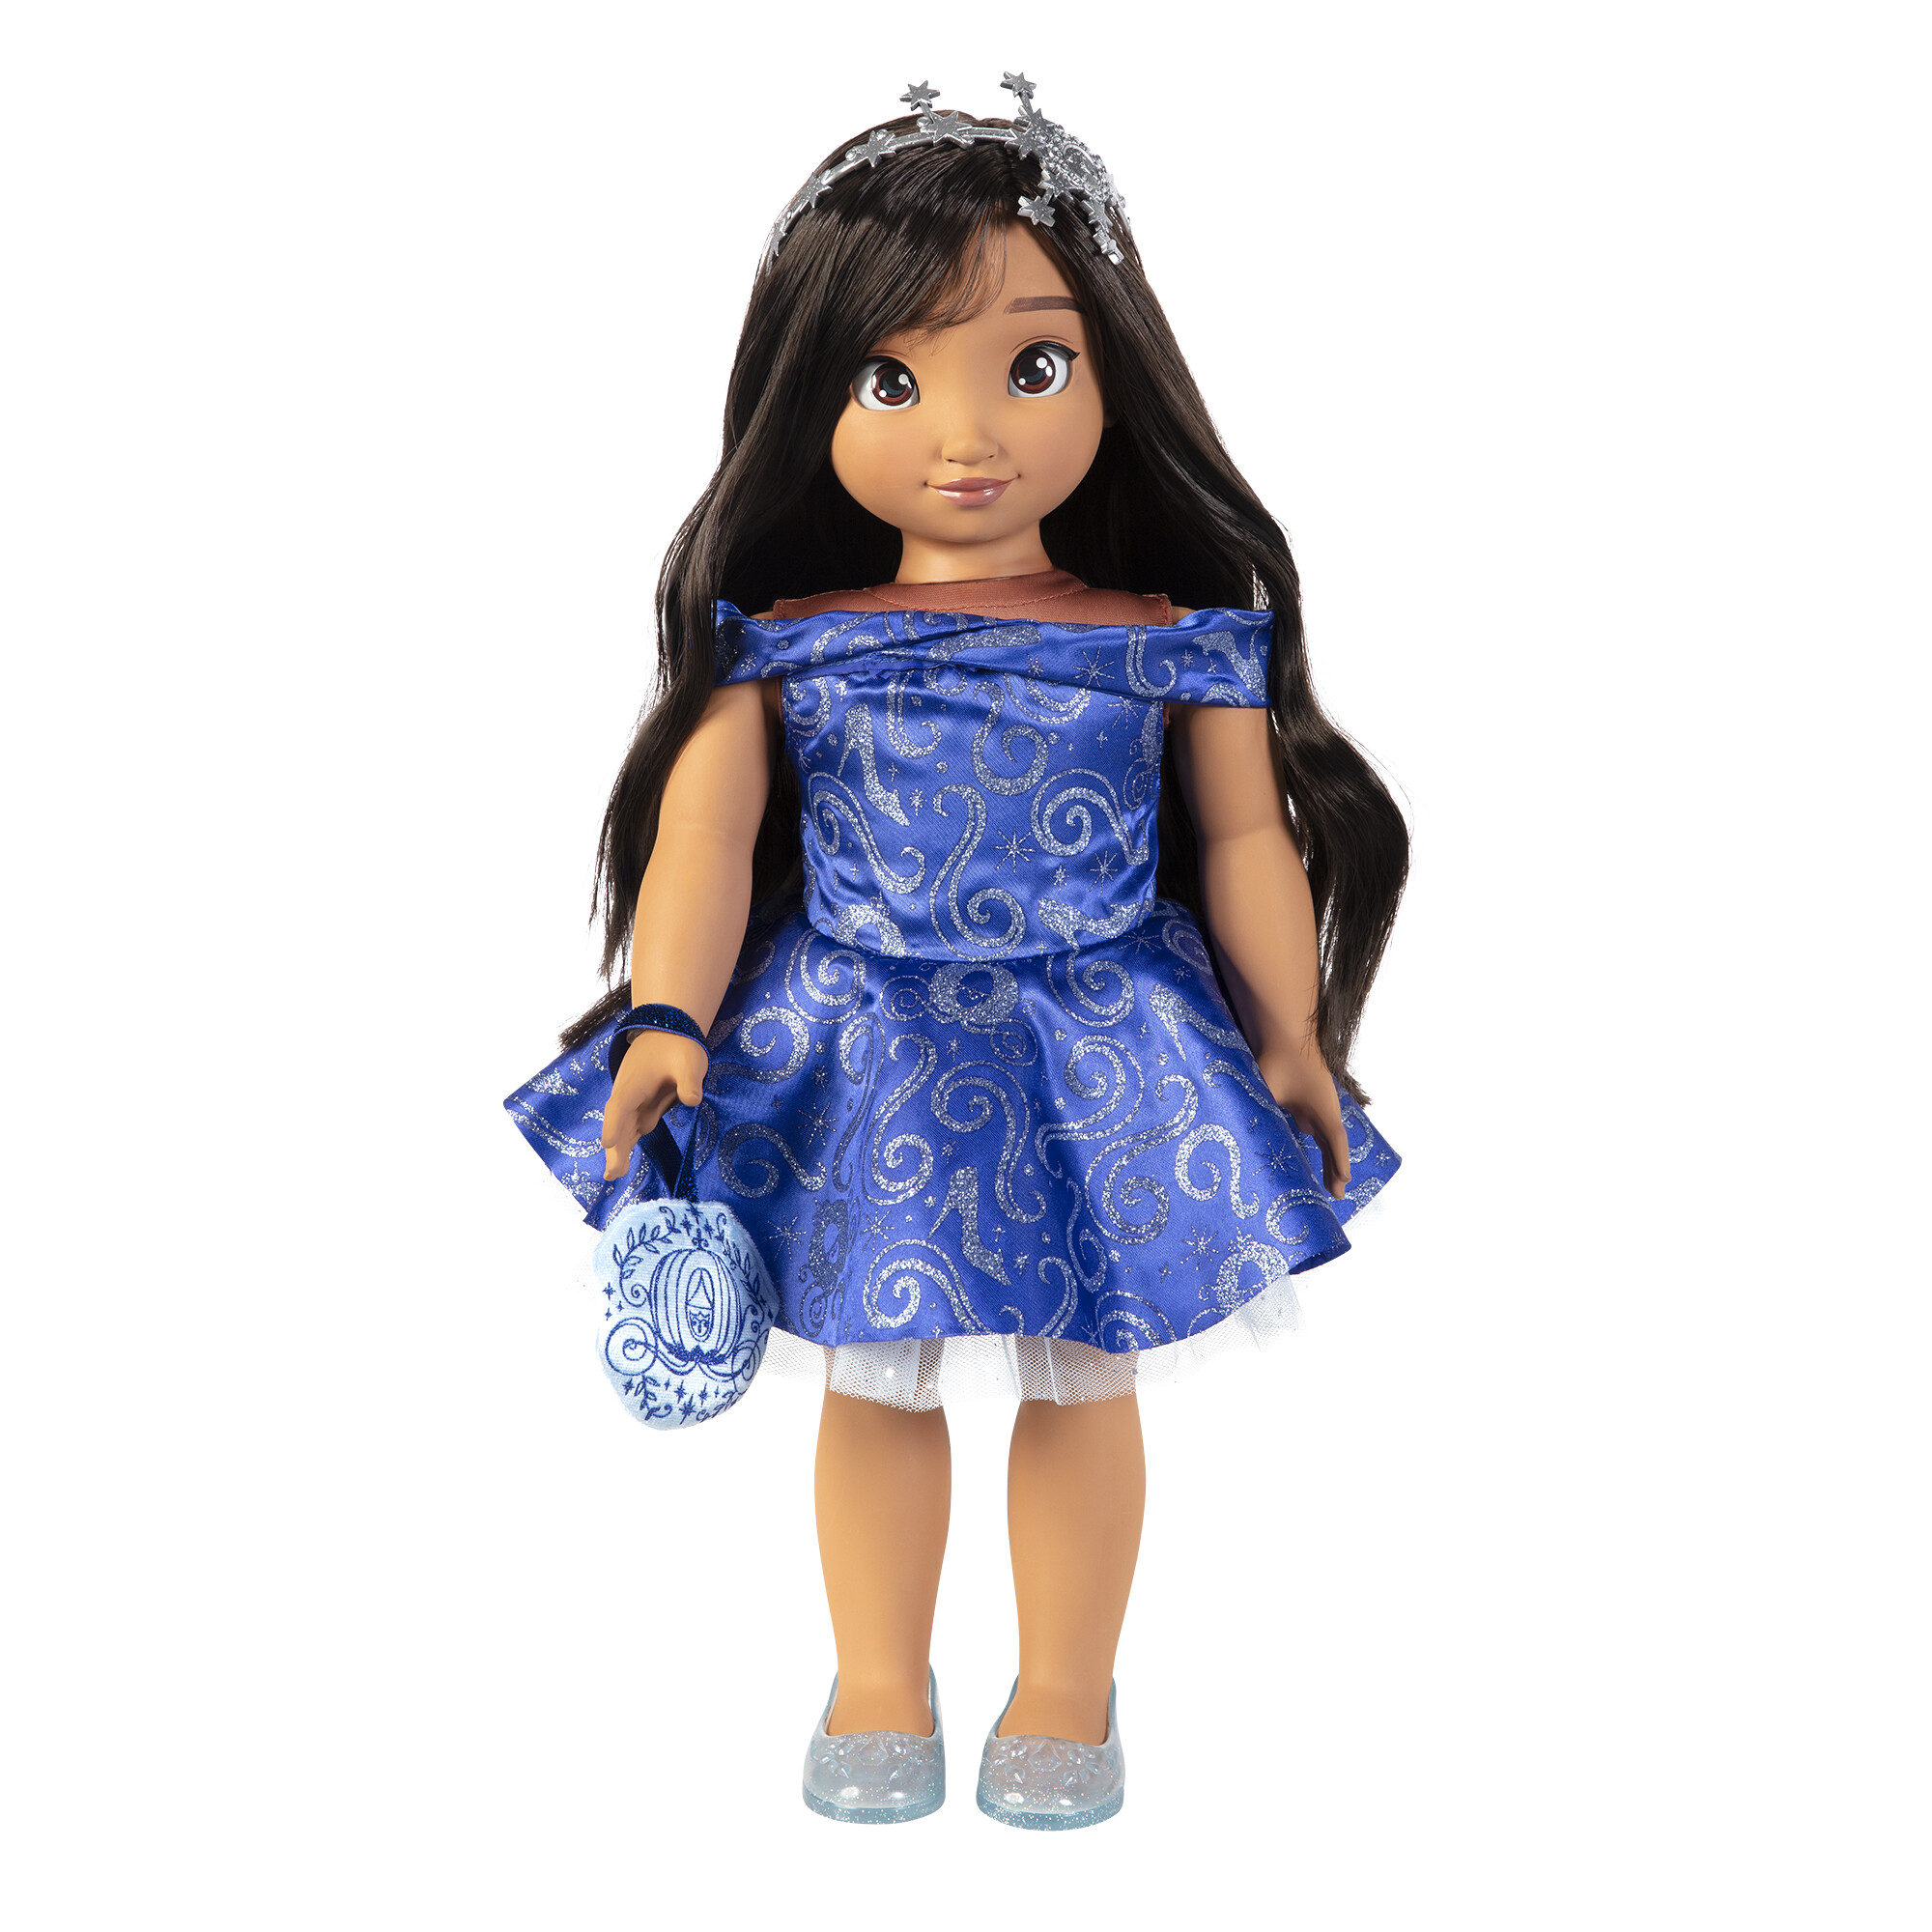 Disney ily 4ever bambola 46 cm ispirata a cenerentola con capelli lunghi e accessori - DISNEY PRINCESS